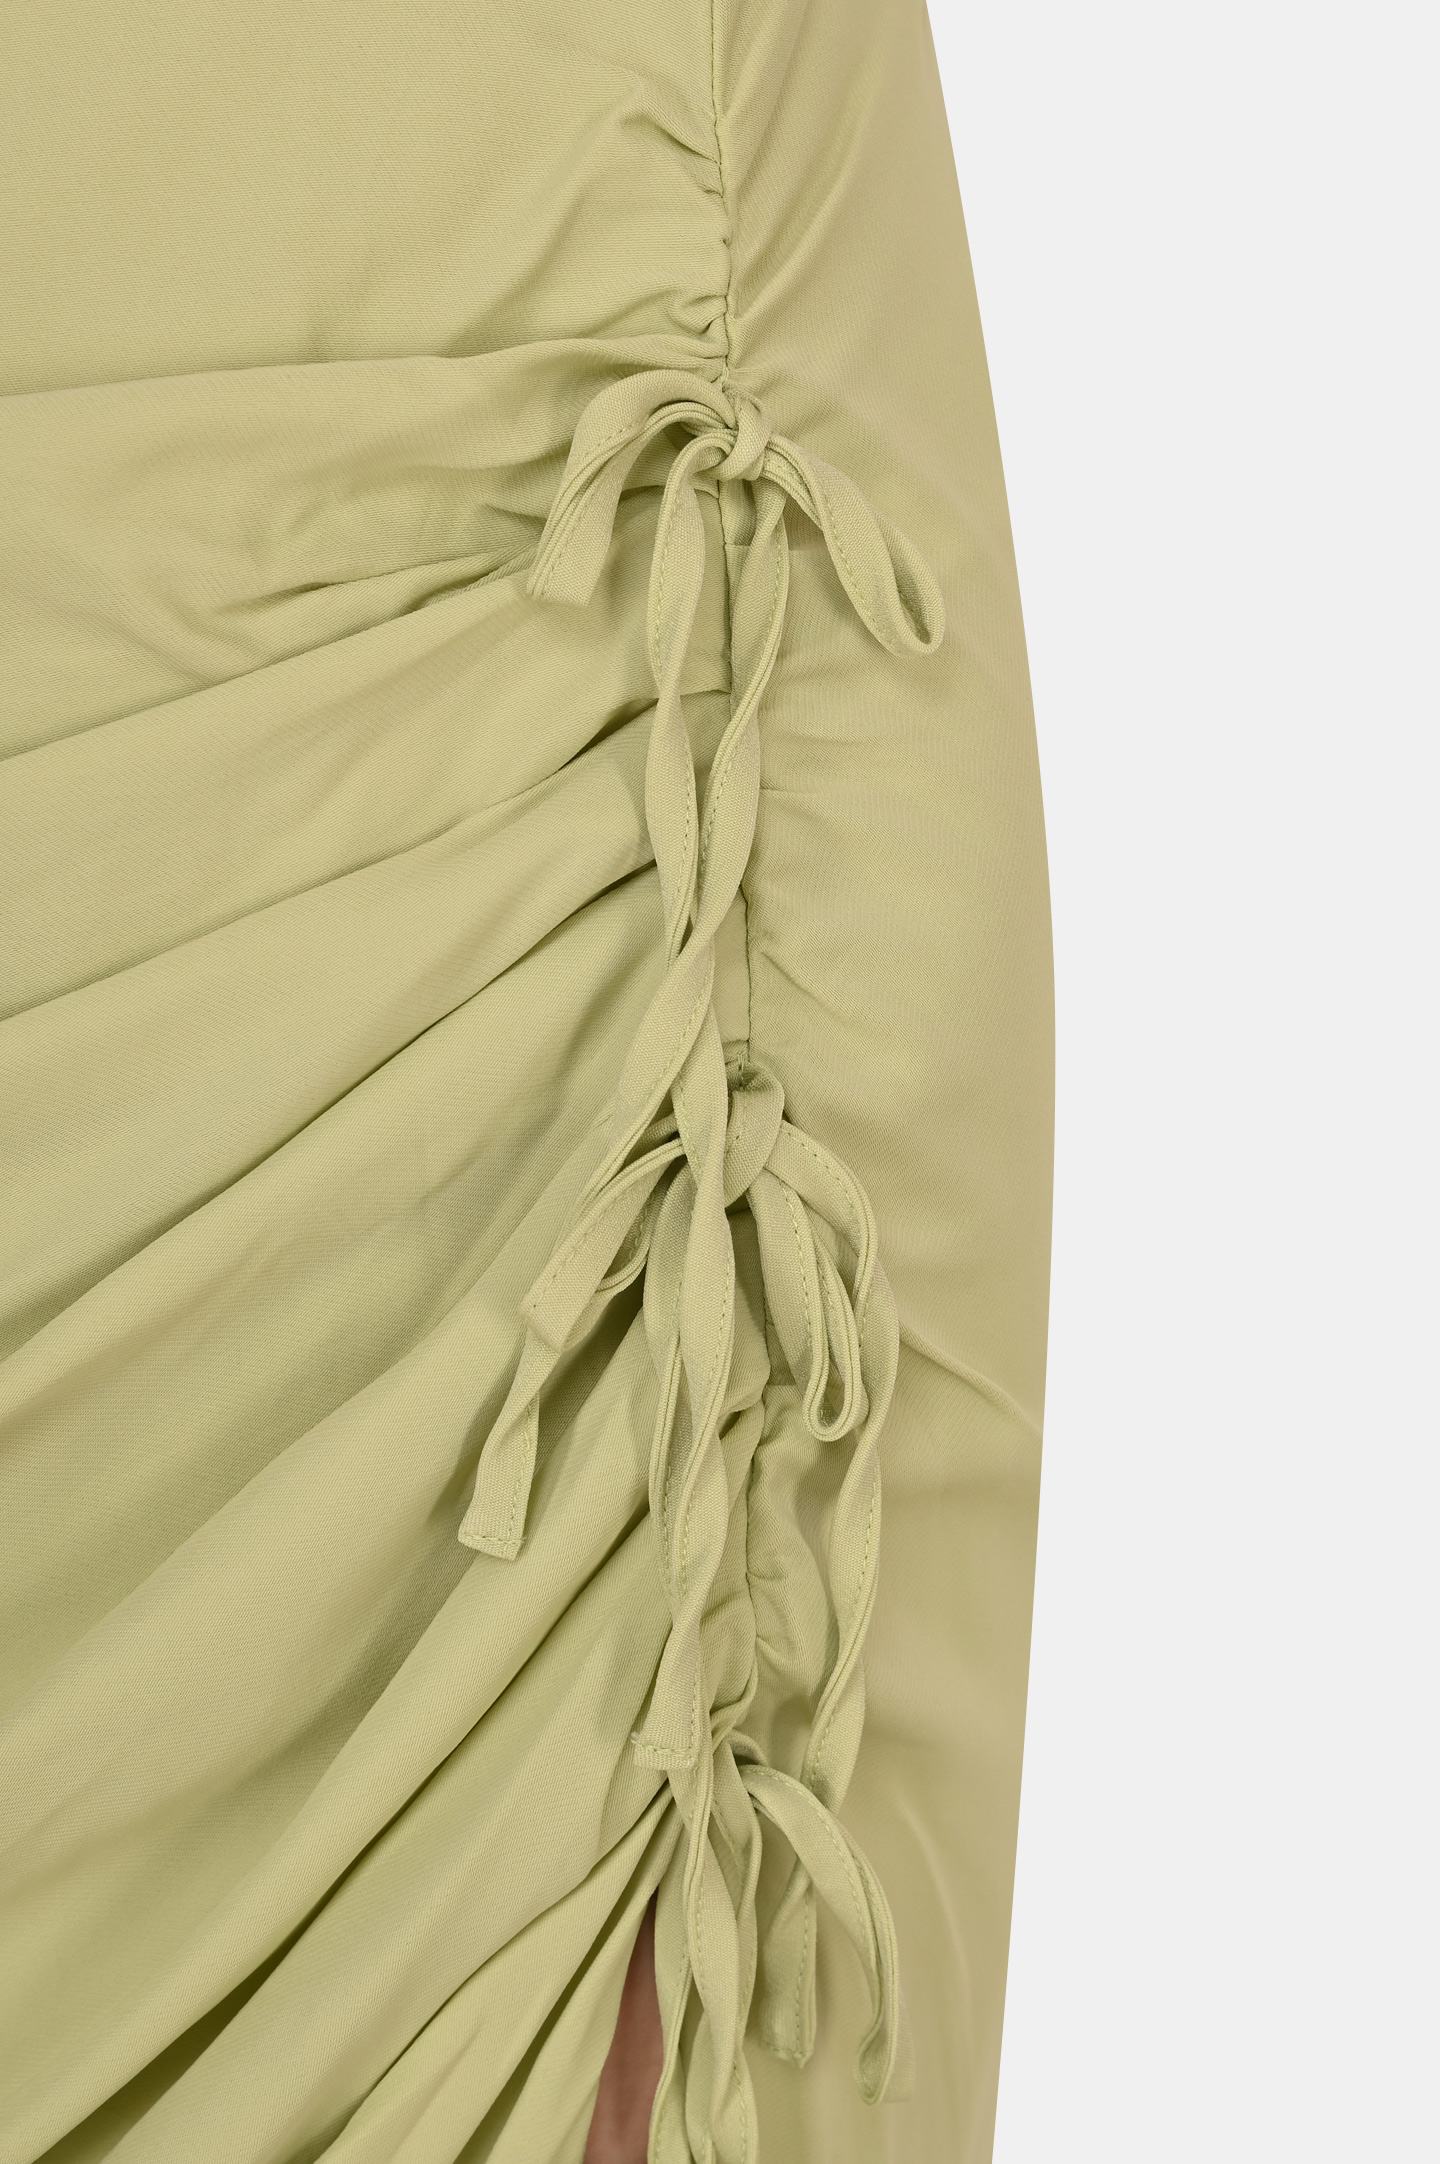 Платье SELF PORTRAIT RS22-114, цвет: Зеленый, Женский